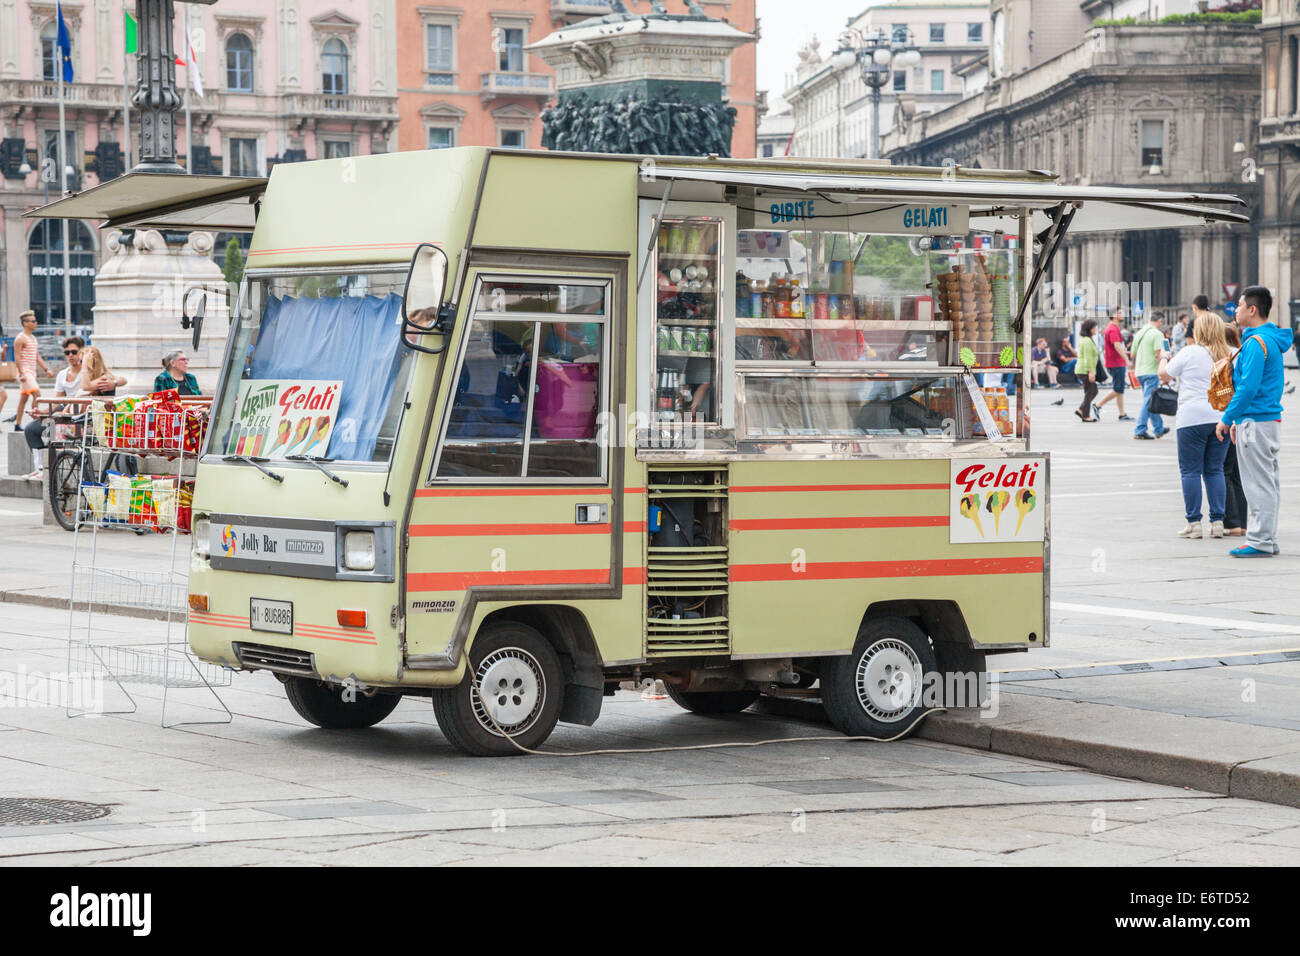 Traditionelle Vintage italienisches Eis und Imbiss van auf der Piazza Duomo, Mailand, Italien Stockfoto